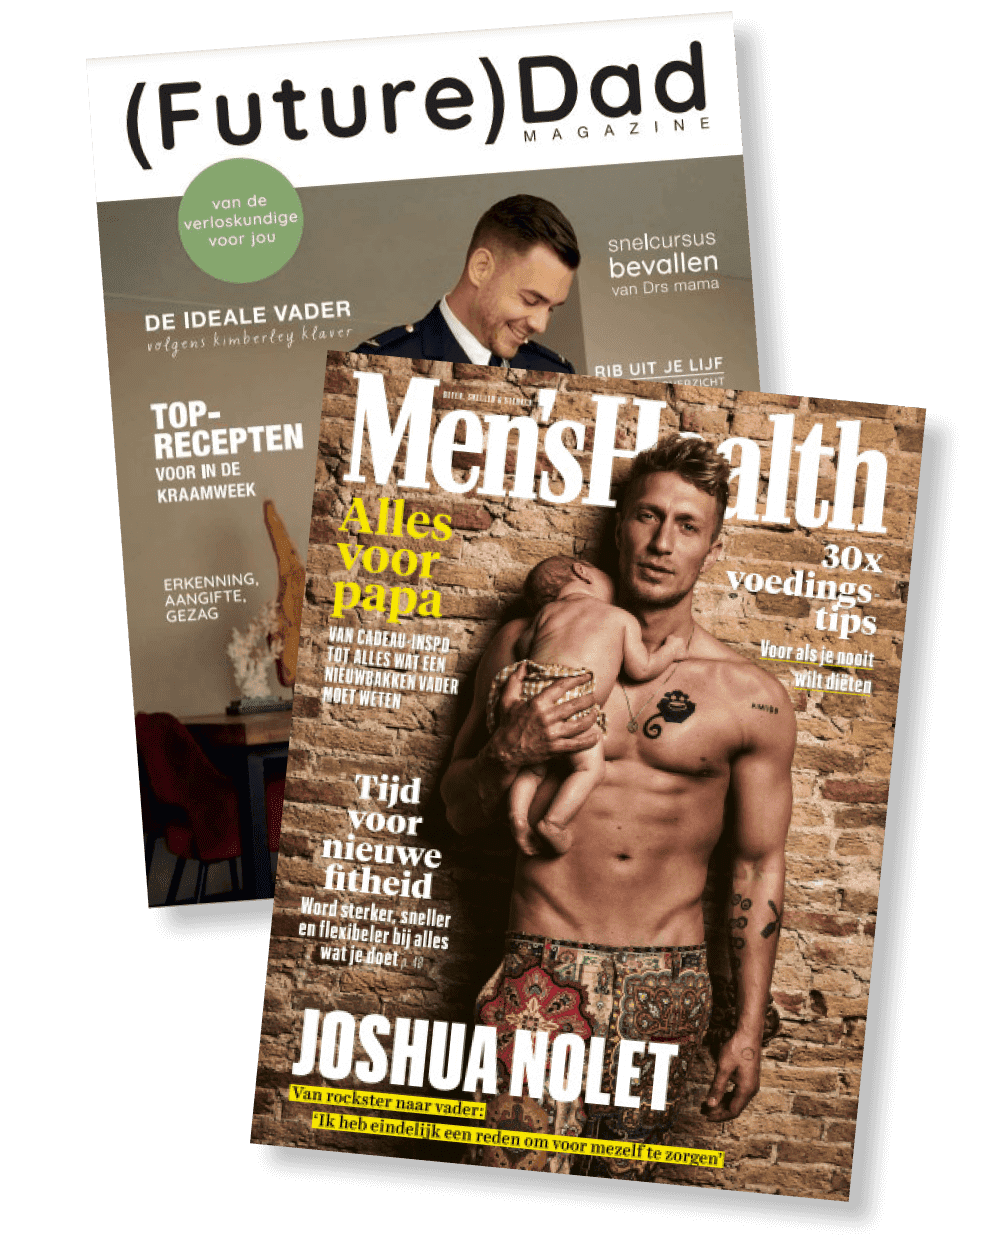 Men's Health (Future)Dad magazines